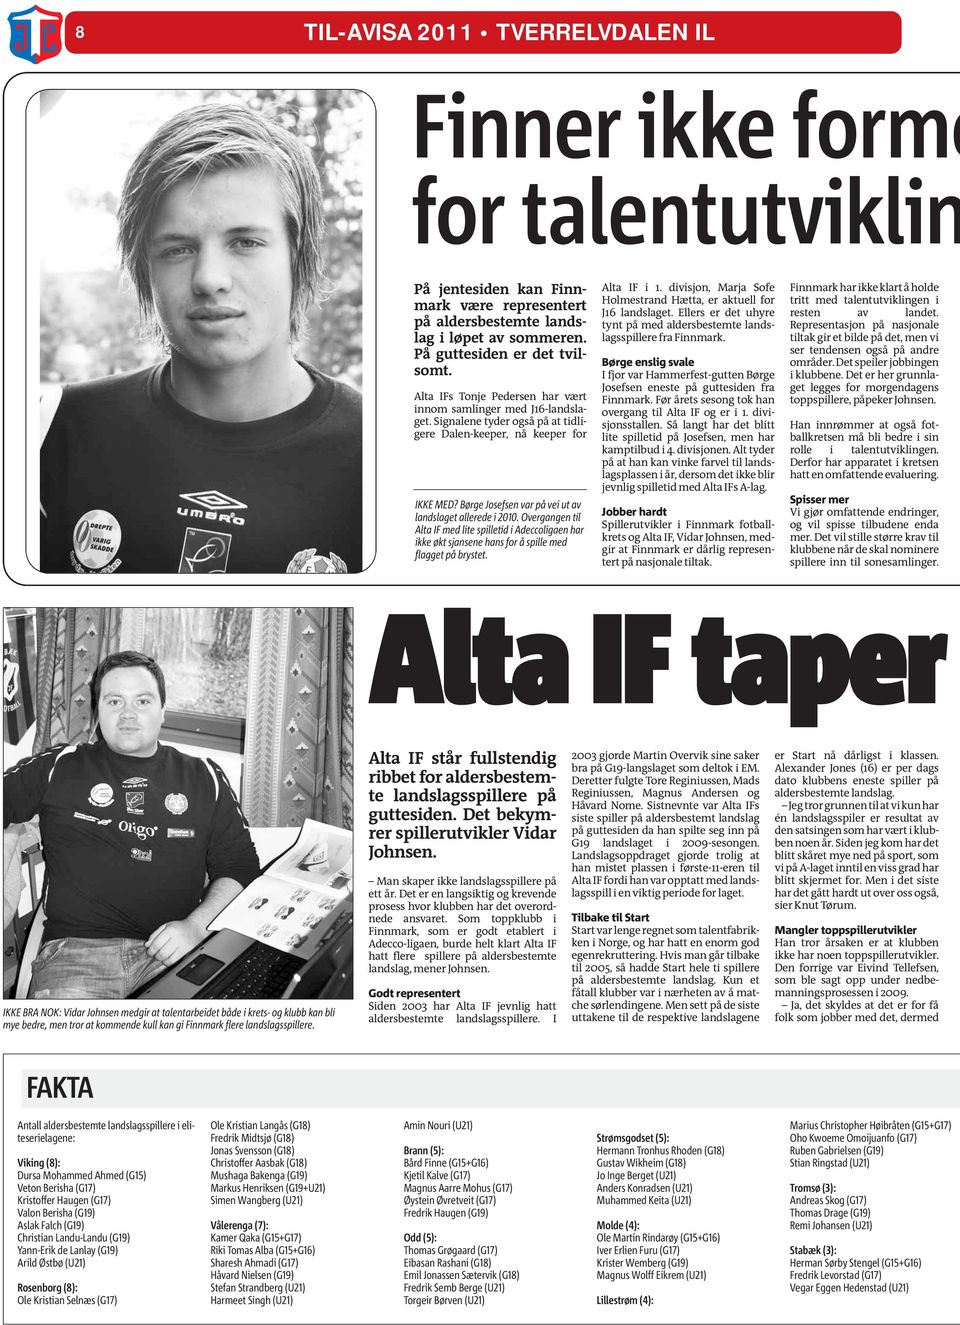 Børge Josefsen var på vei ut av landslaget allerede i 2010. Overgangen til Alta IF med lite spilletid i Adeccoligaen har ikke økt sjansene hans for å spille med flagget på brystet. Alta IF i 1.